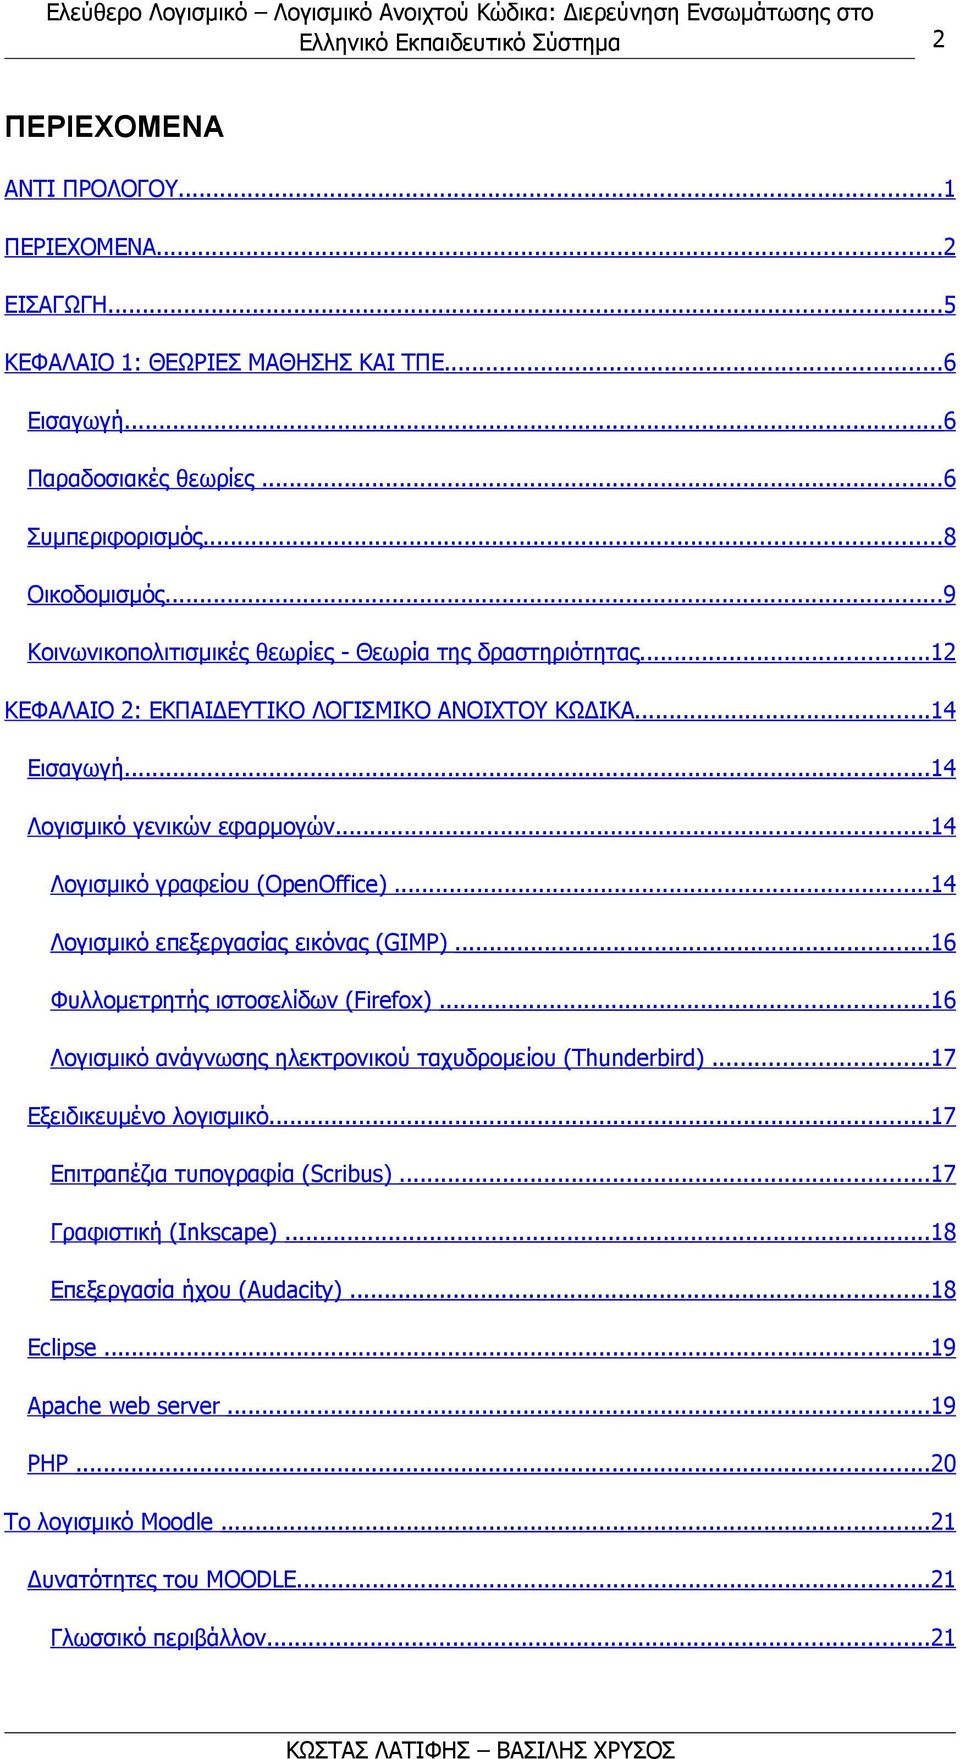 ..14 Λογισμικό γραφείου (OpenOffice)...14 Λογισμικό επεξεργασίας εικόνας (GIMP)...16 Φυλλομετρητής ιστοσελίδων (Firefox)...16 Λογισμικό ανάγνωσης ηλεκτρονικού ταχυδρομείου (Thunderbird).